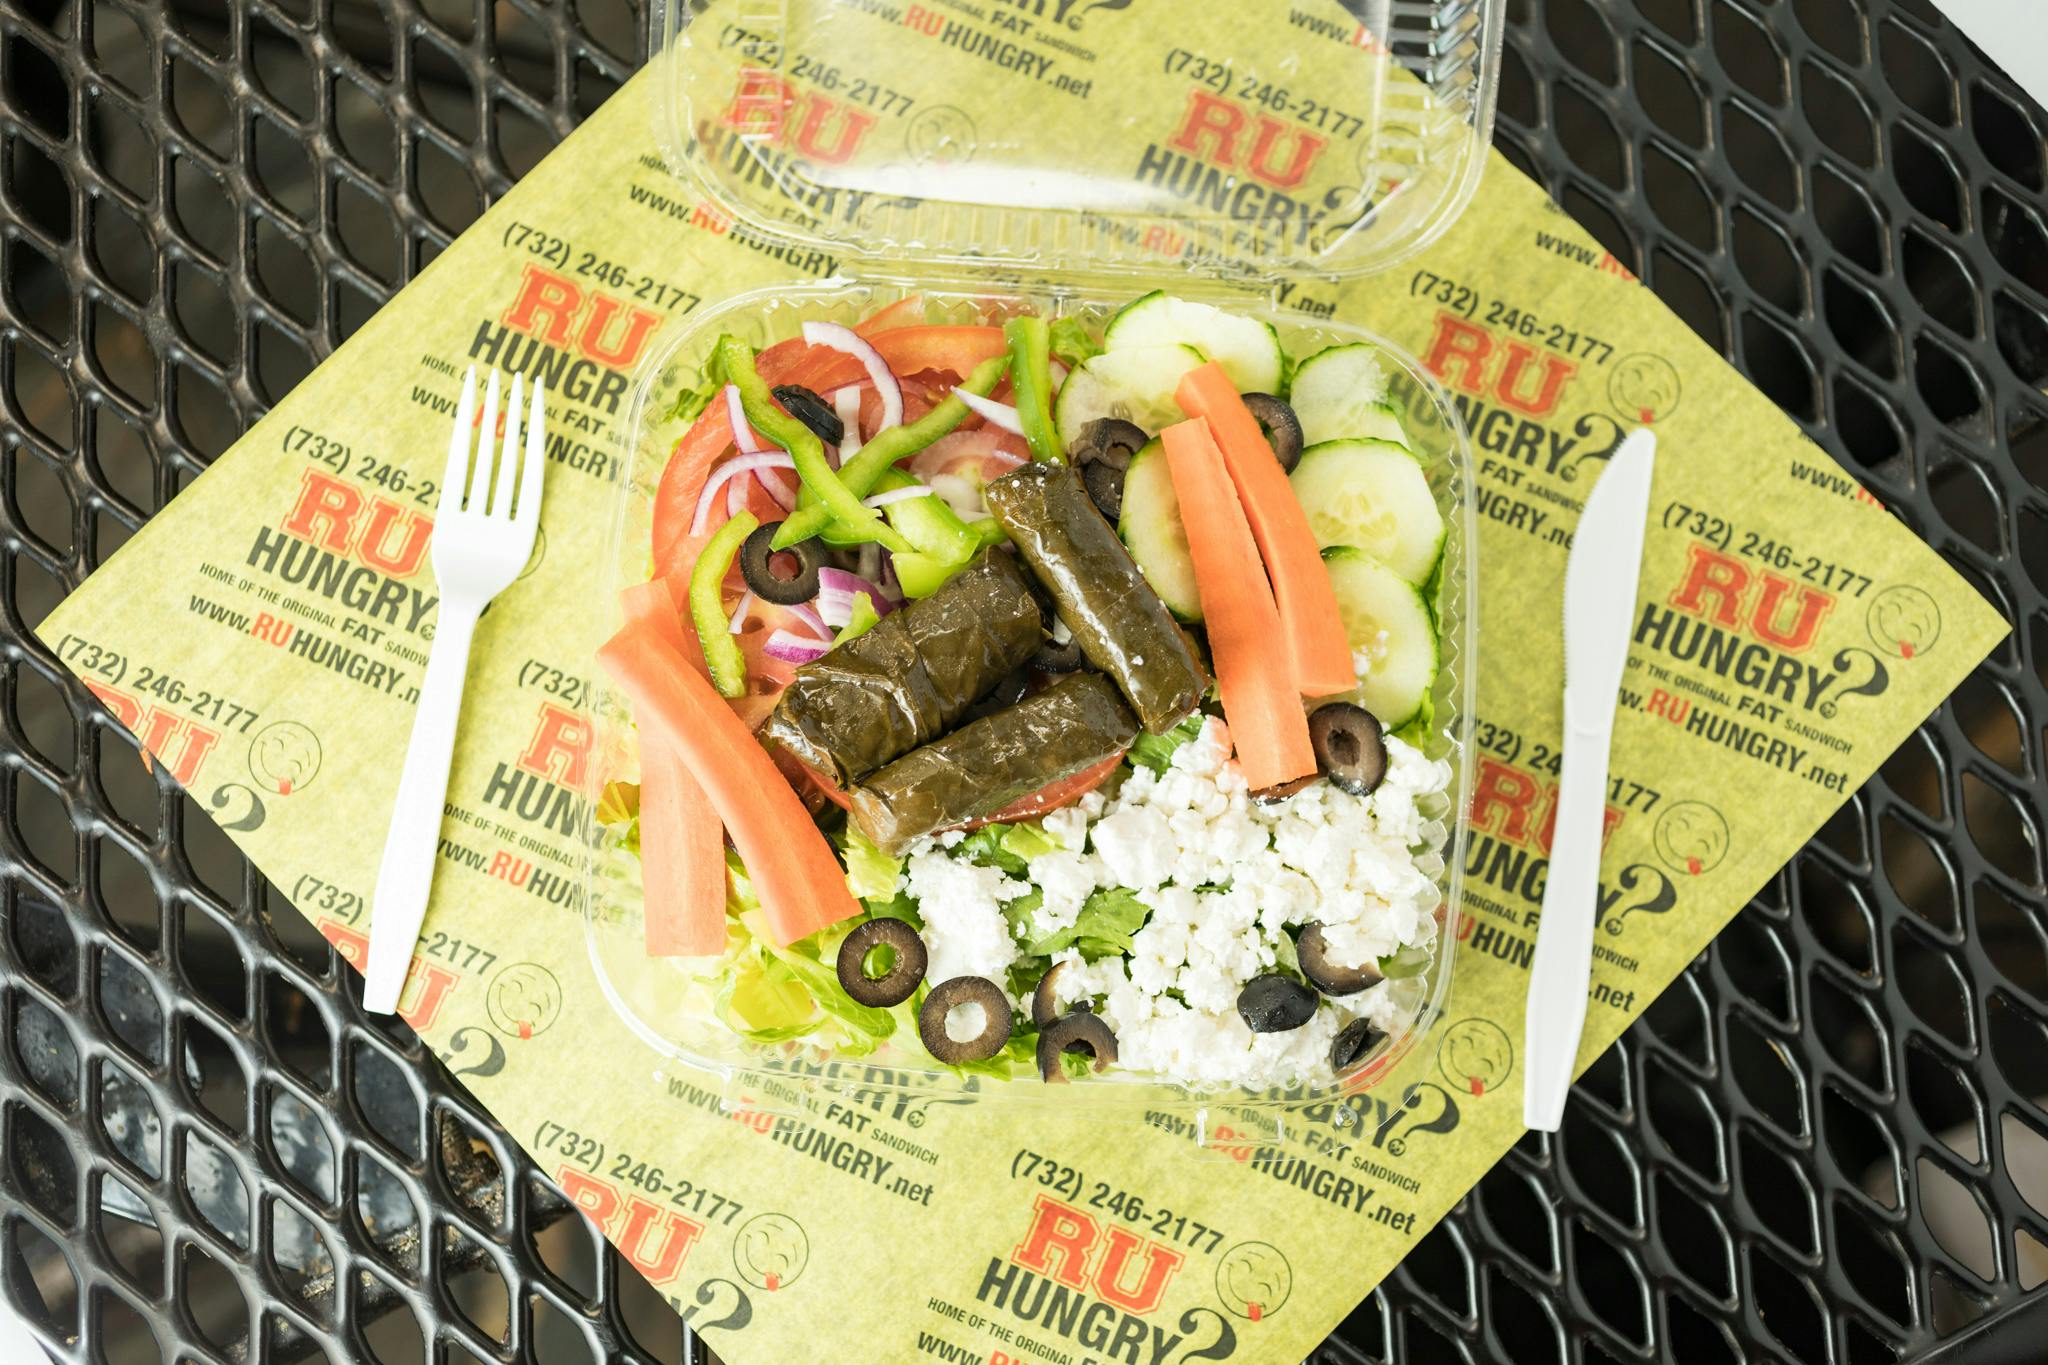 Greek Salad from R U Hungry in New Brunswick, NJ